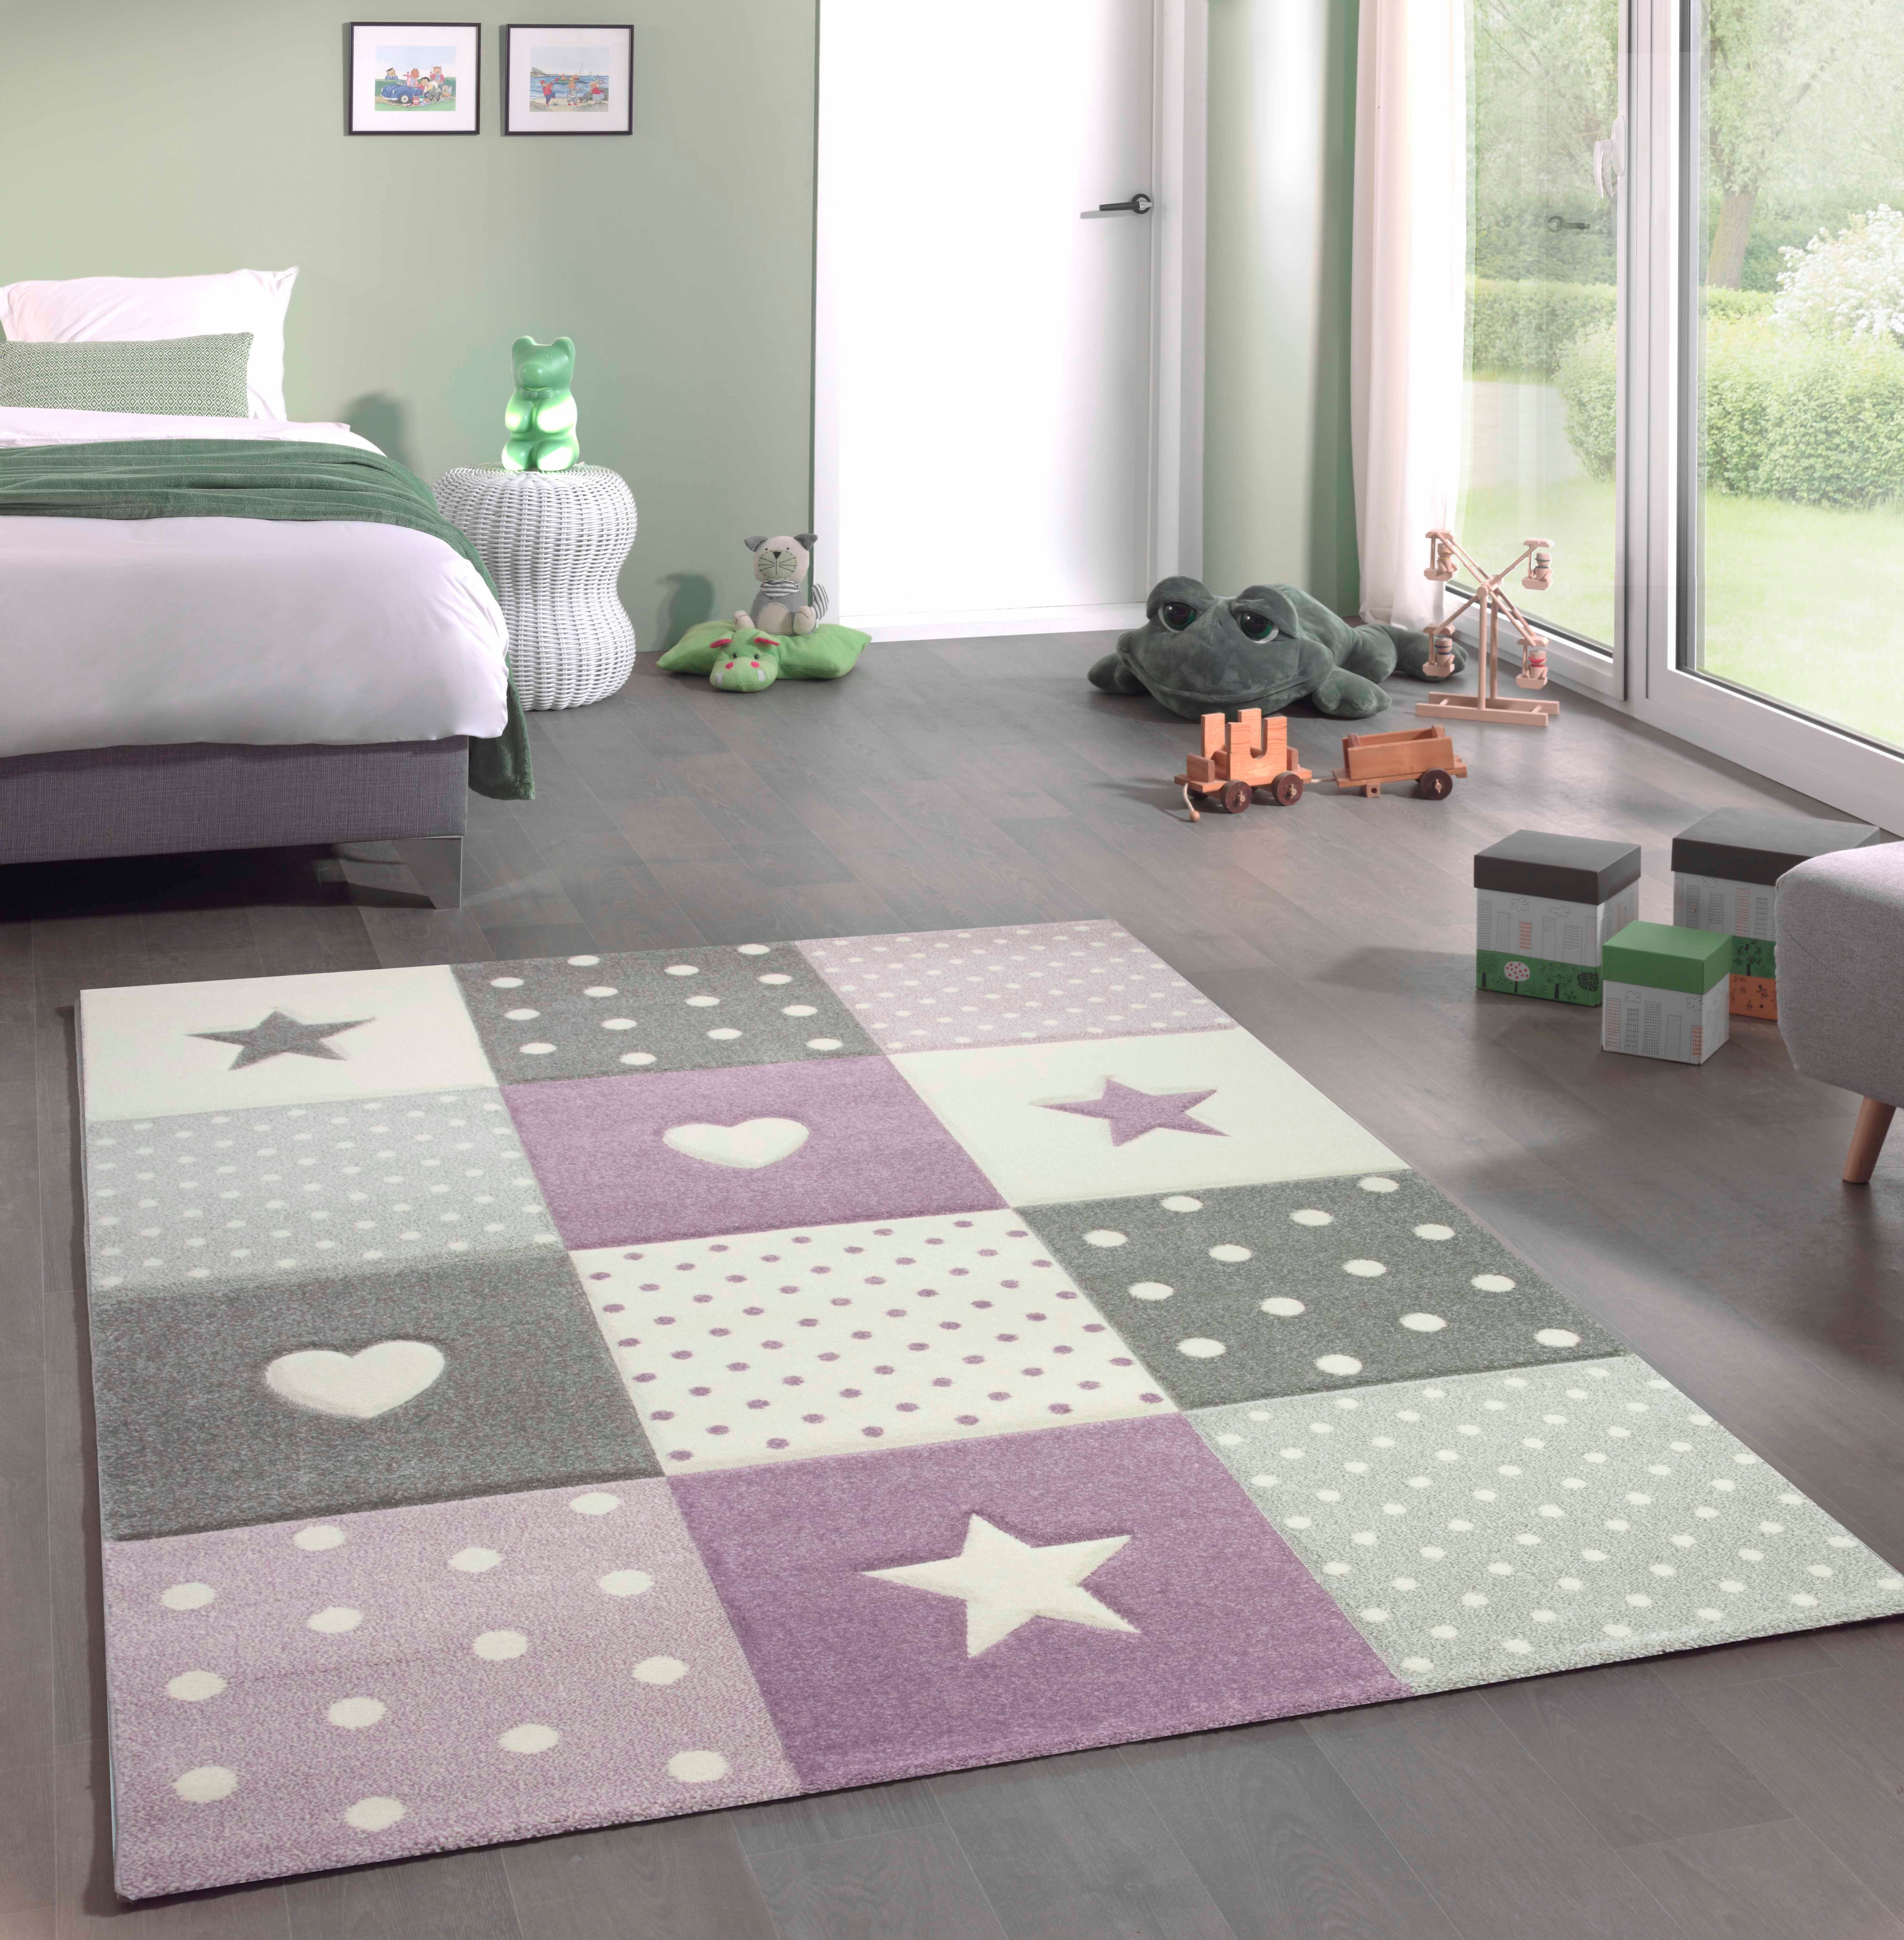 Kinderteppich »Kinderzimmer Teppich Spiel & Baby Teppich Herz Stern Punkte  Design in lila grau creme«, Teppich-Traum, rechteckig, Höhe 13 mm